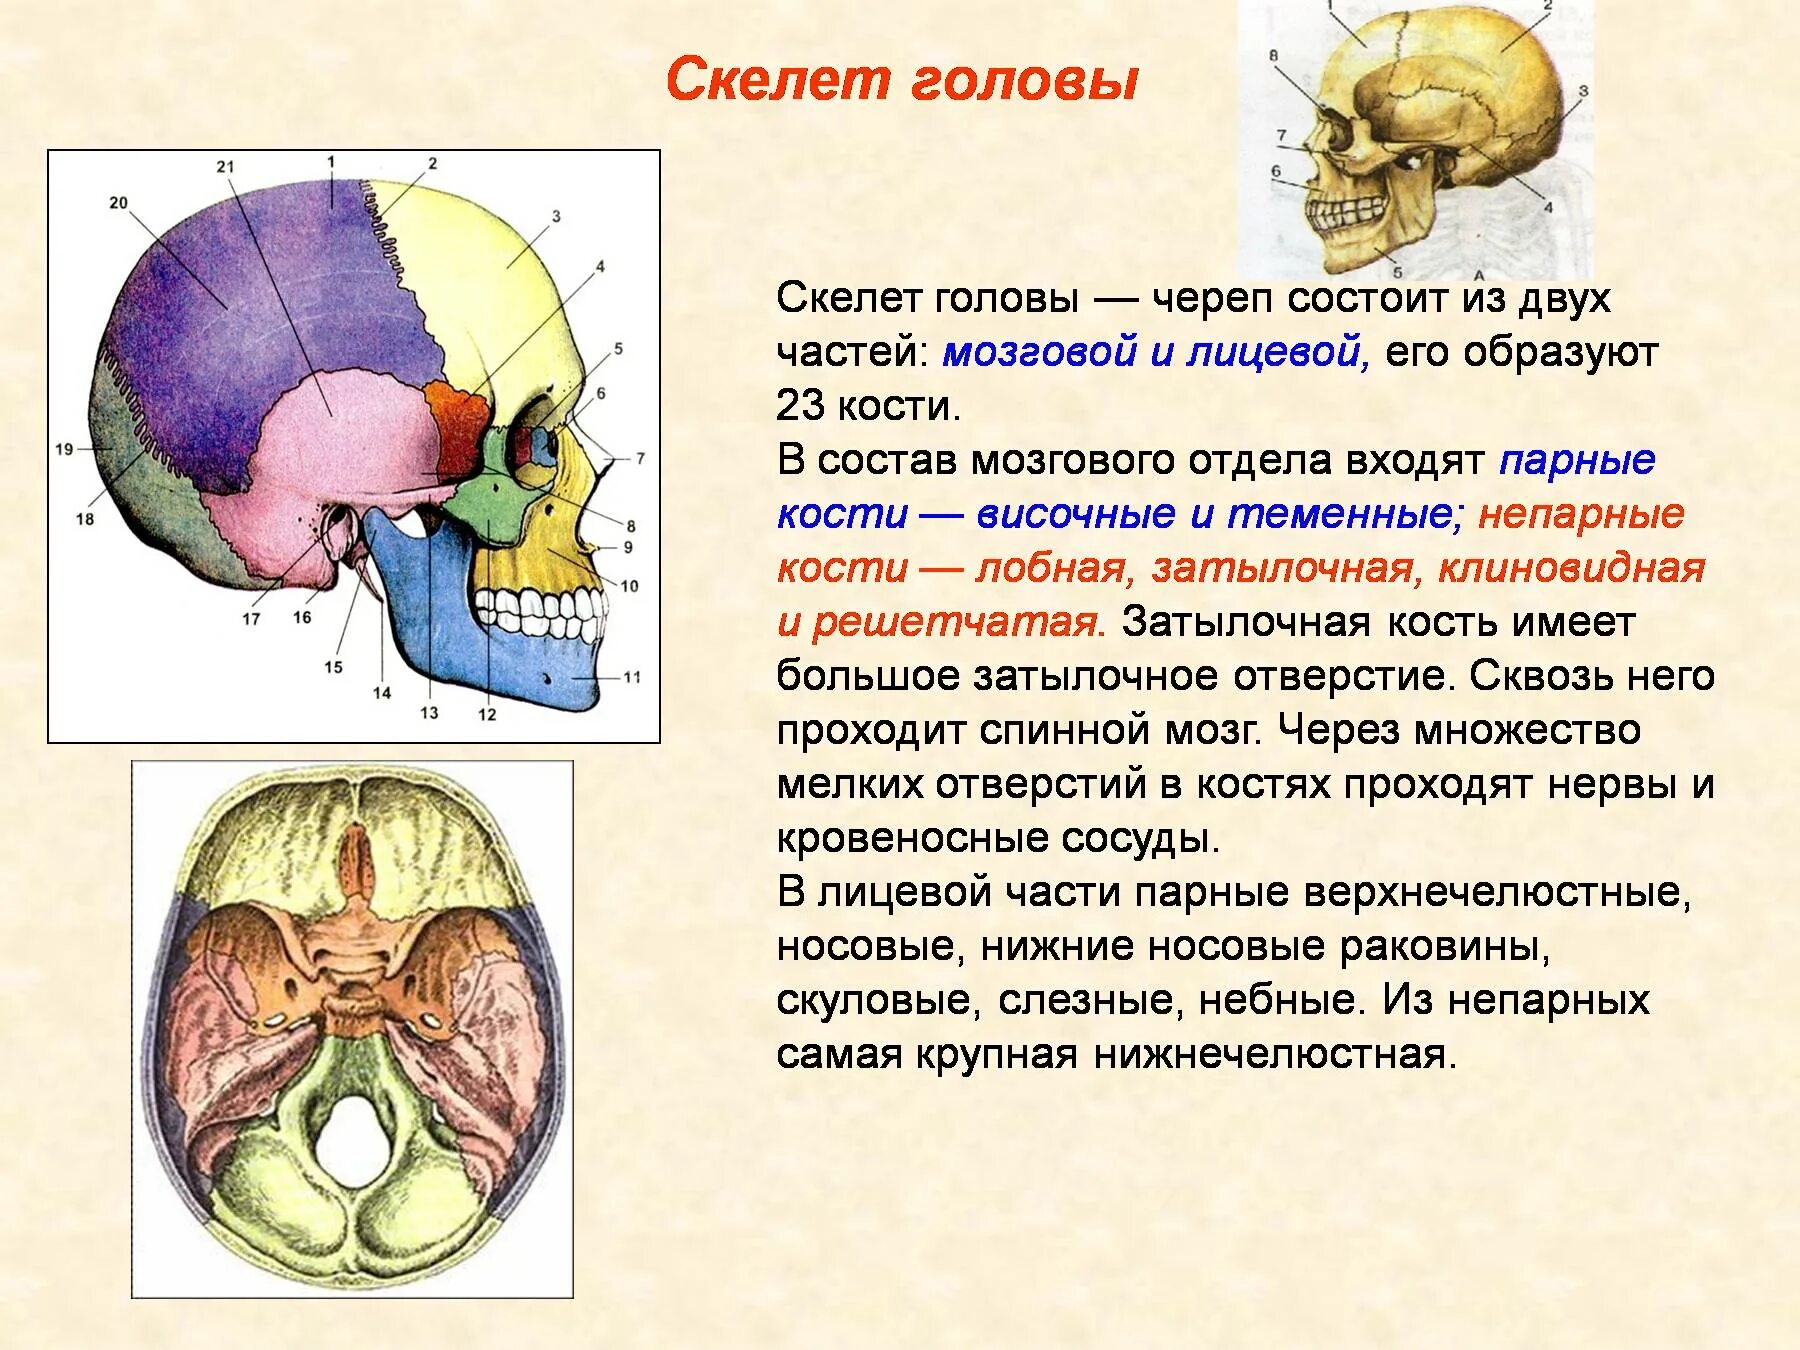 Скелет головы особенности строения. Отделы скелета головы. Скелет головы. Кости мозгового и лицевого черепа.